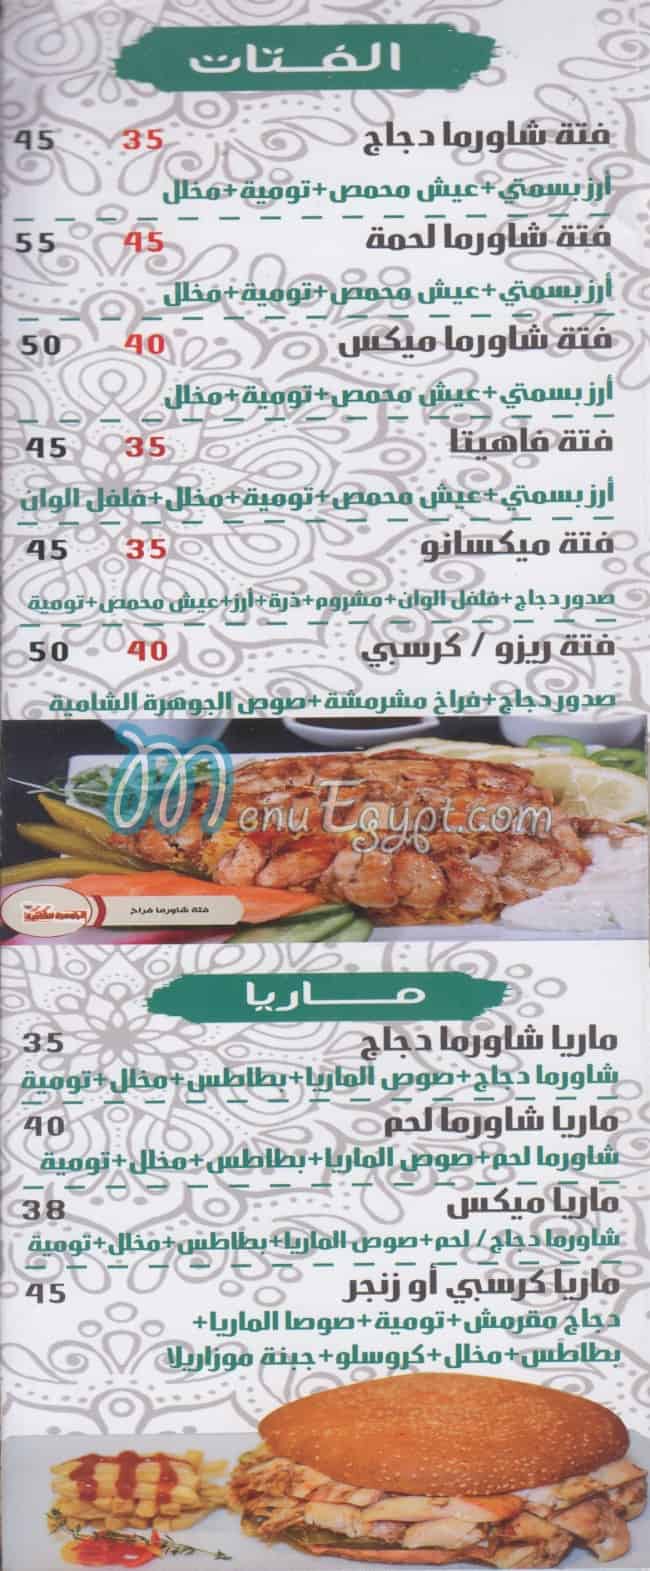 El Gawhara online menu